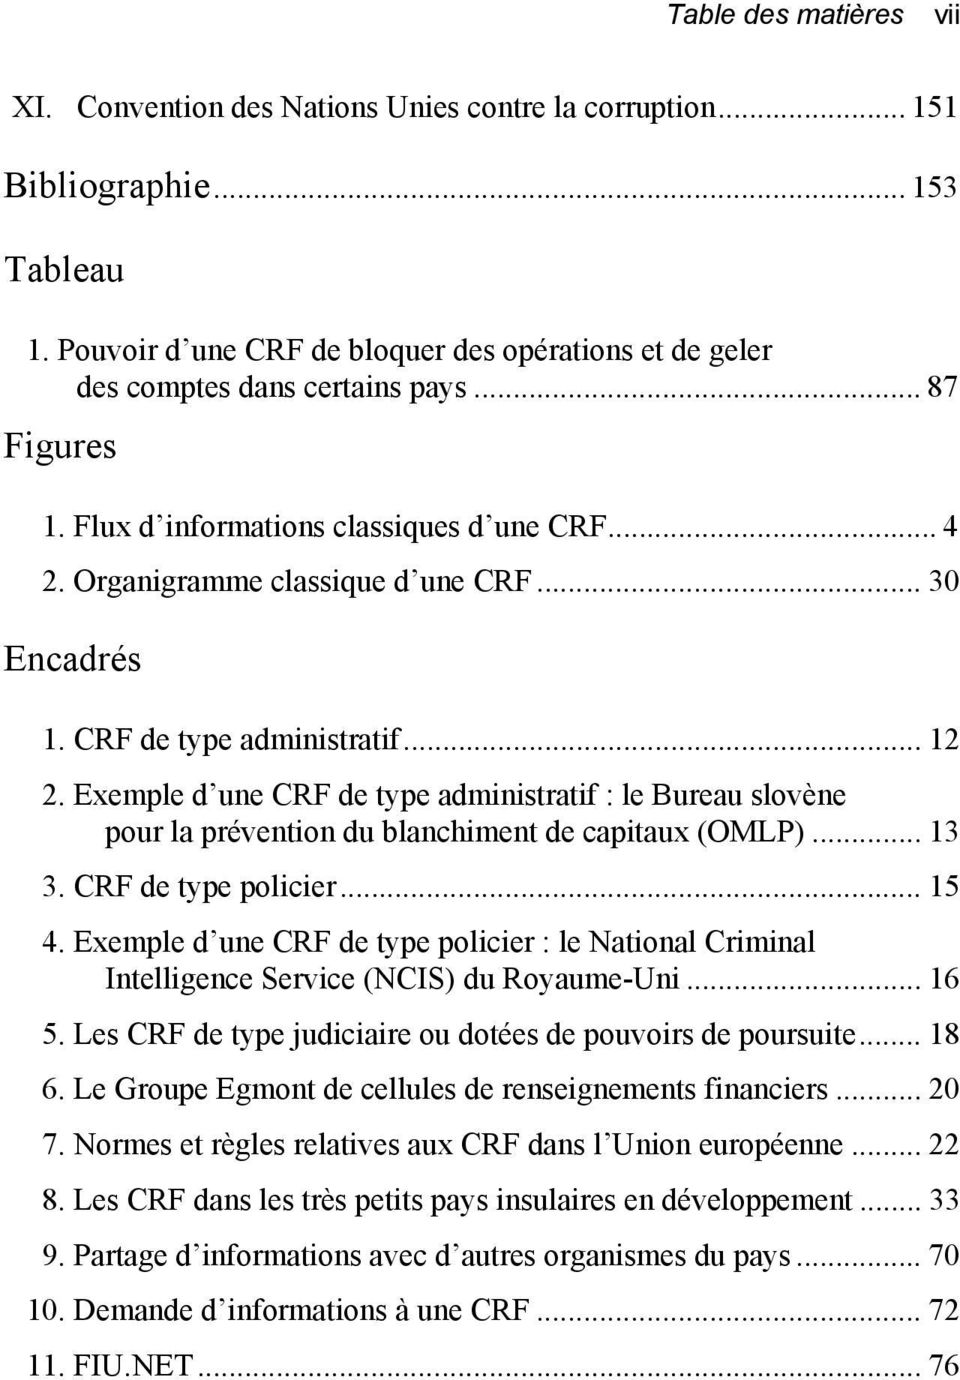 .. 30 Encadrés 1. CRF de type administratif... 12 2. Exemple d une CRF de type administratif : le Bureau slovène pour la prévention du blanchiment de capitaux (OMLP)... 13 3. CRF de type policier.